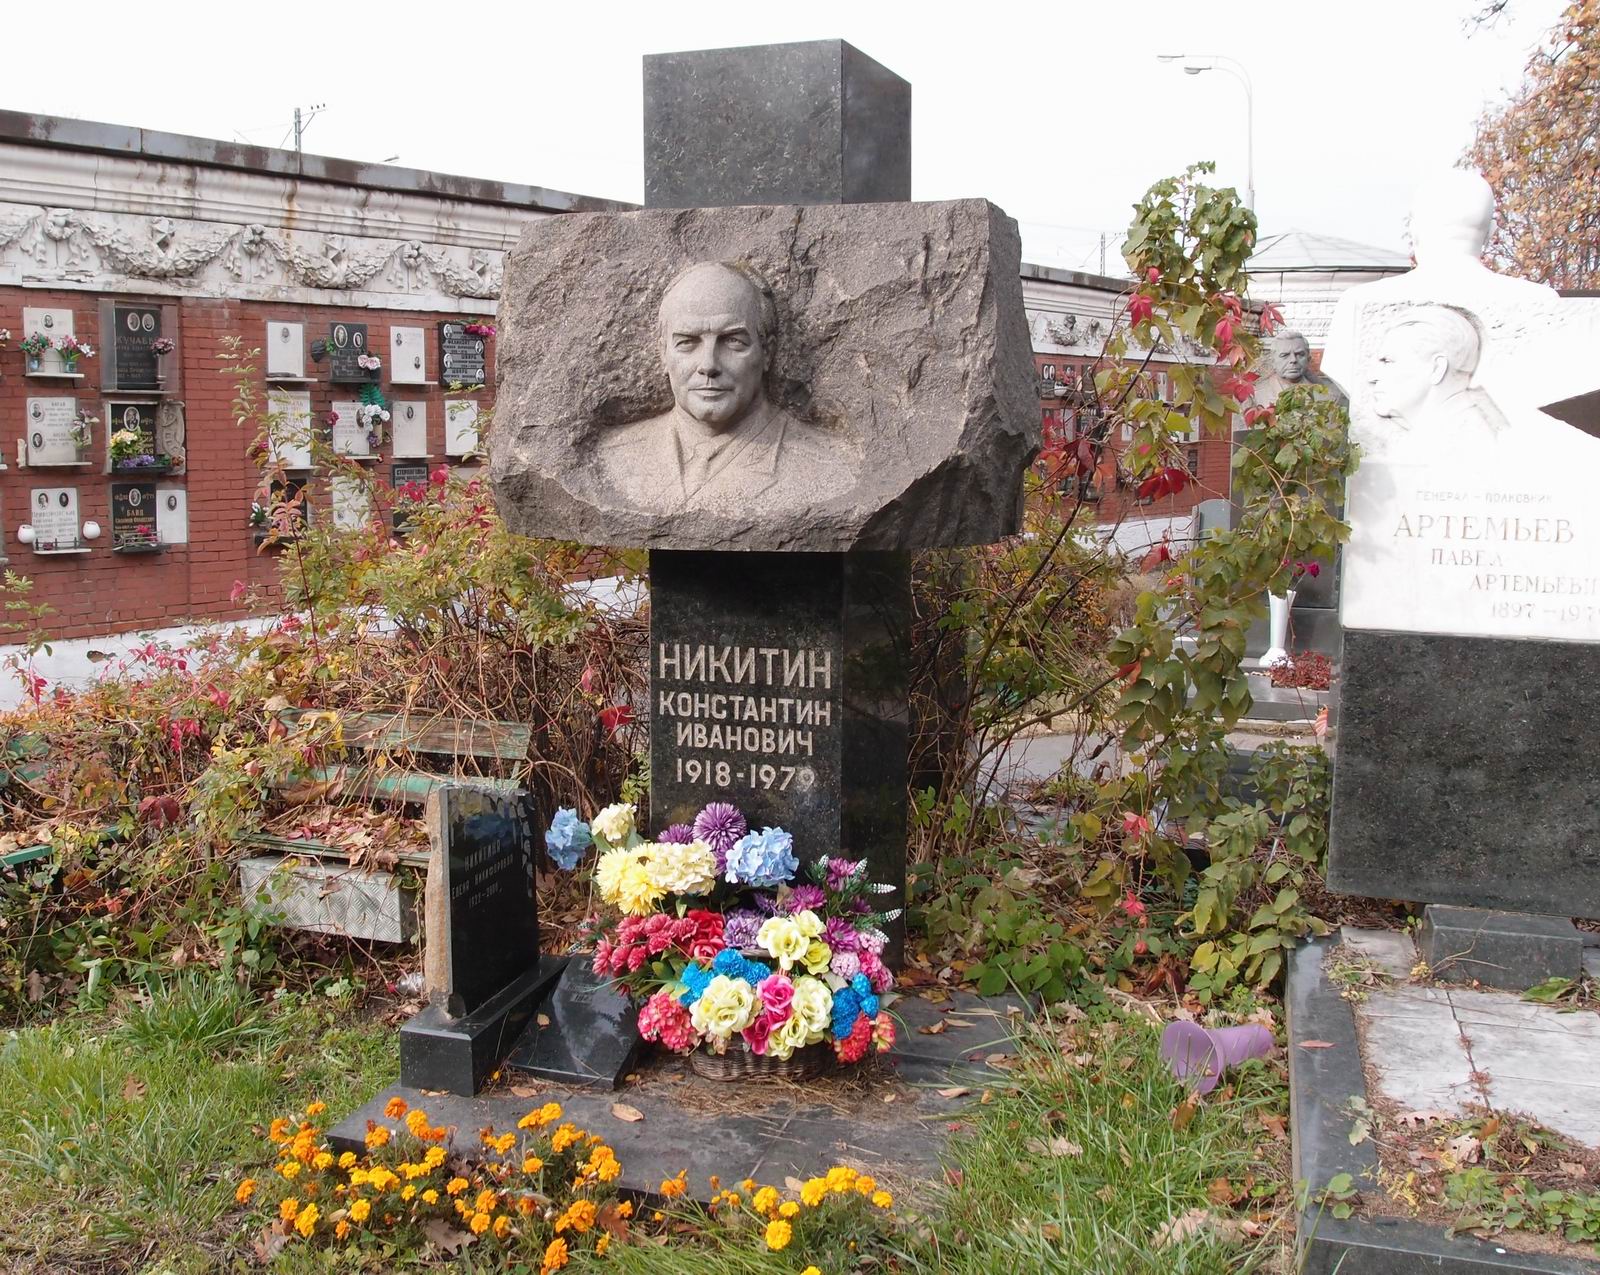 Памятник на могиле Никитина К.И. (1918–1979), ск. А.Бычуков, арх. Е.Кутырев, на Новодевичьем кладбище (7–15–18).